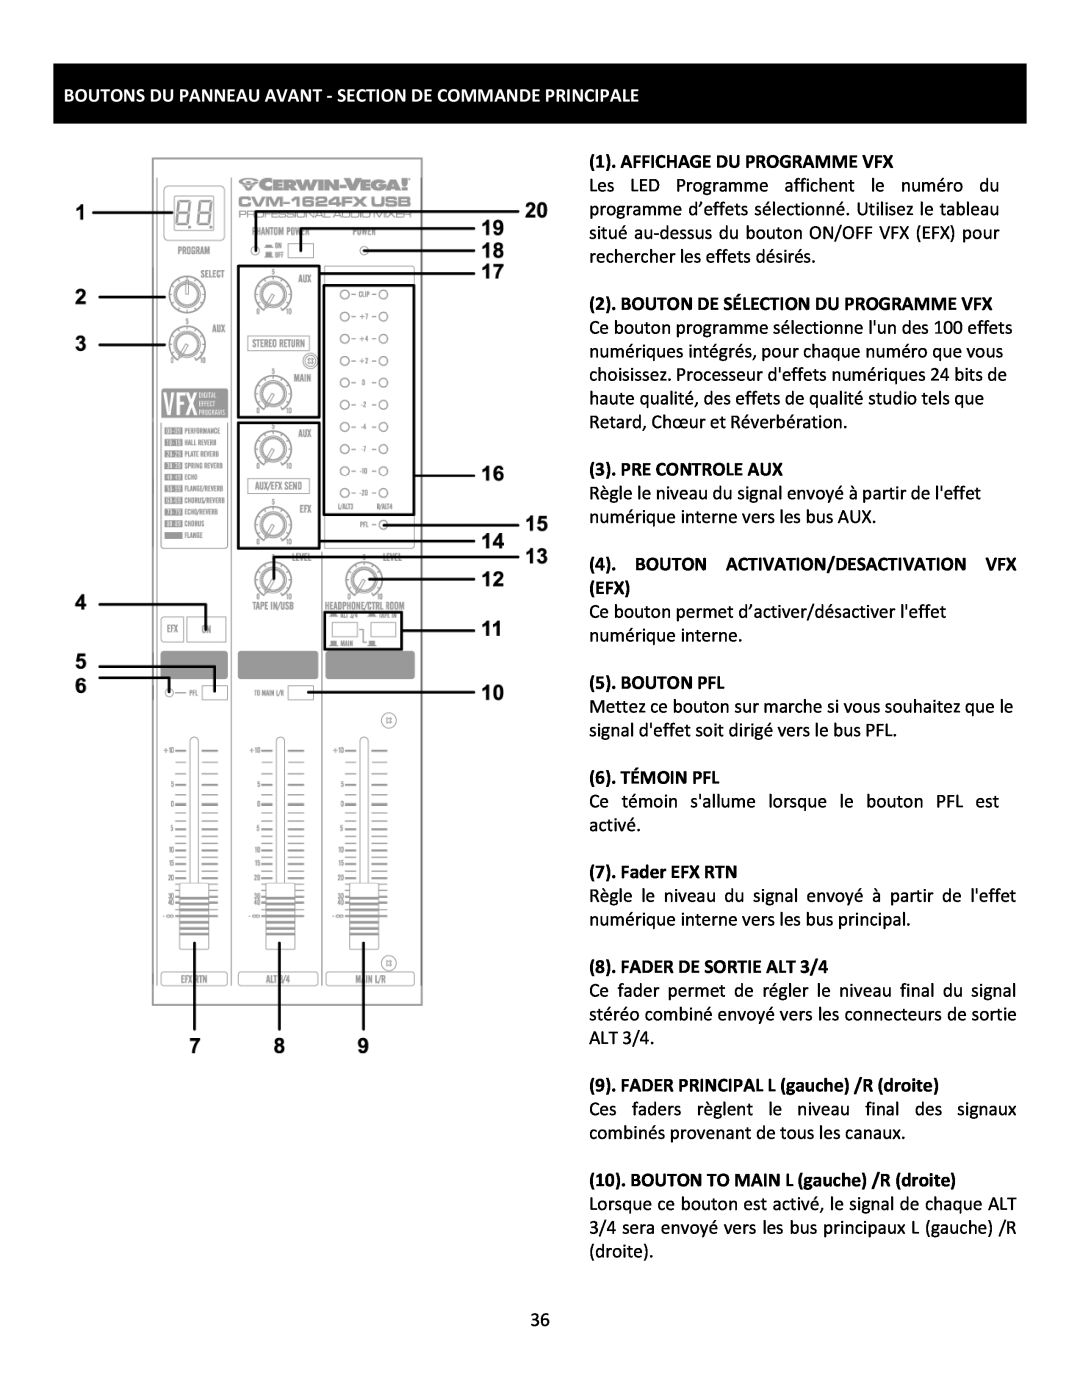 Cerwin-Vega CVM-1224FXUSB manual Boutons Du Panneau Avant - Section De Commande Principale, Affichage Du Programme Vfx 